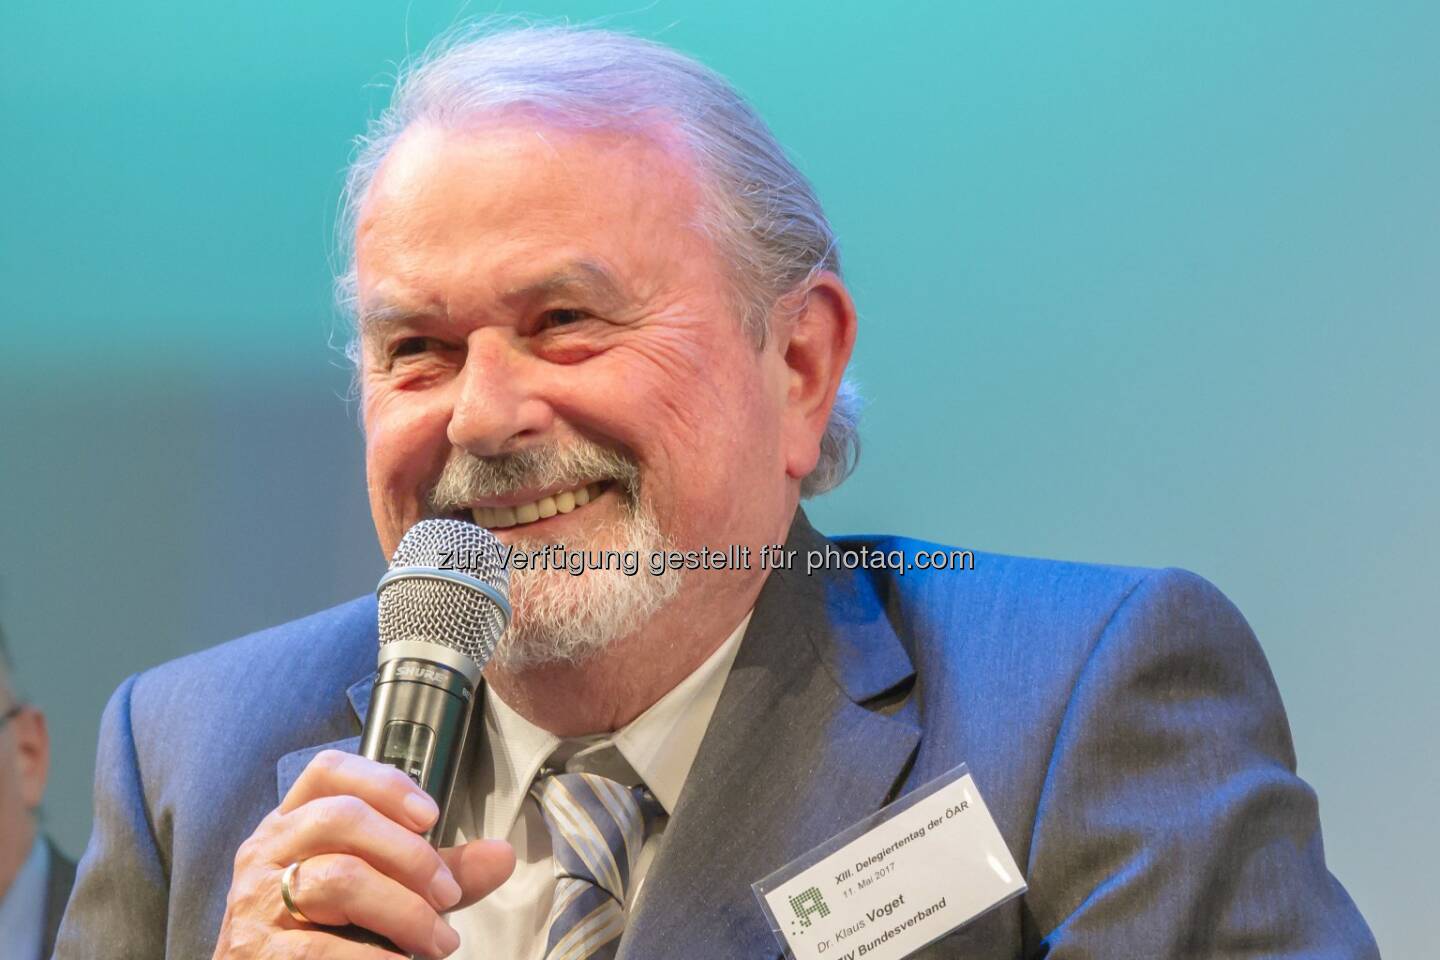 Österreichischer Behindertenrat: Ehrenpräsident Dr. Klaus Voget zum 70. Geburtstag (Fotograf: Michael Janousek / Fotocredit: Österreichischer Behindertenrat)